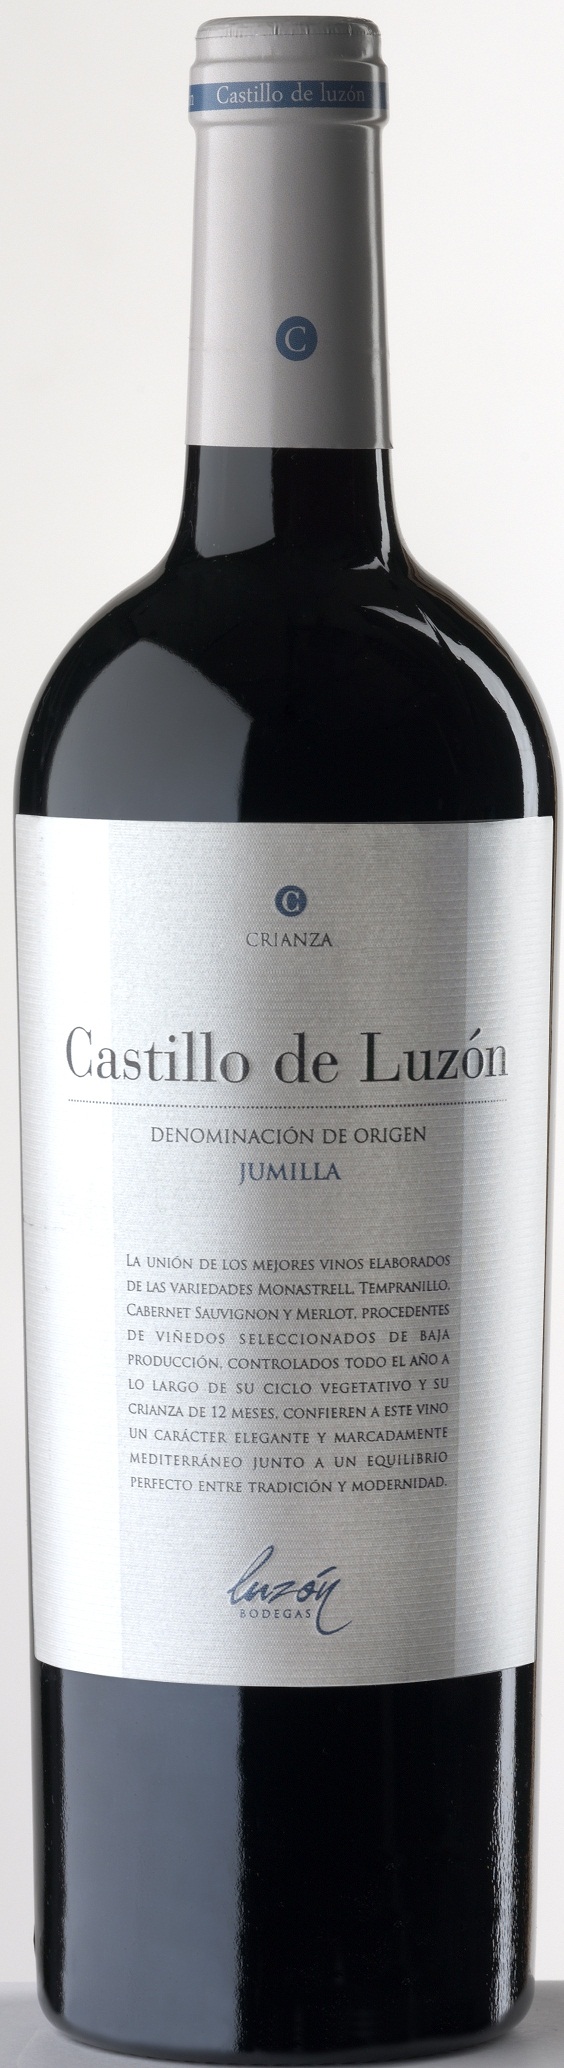 Bild von der Weinflasche Castillo de Luzón